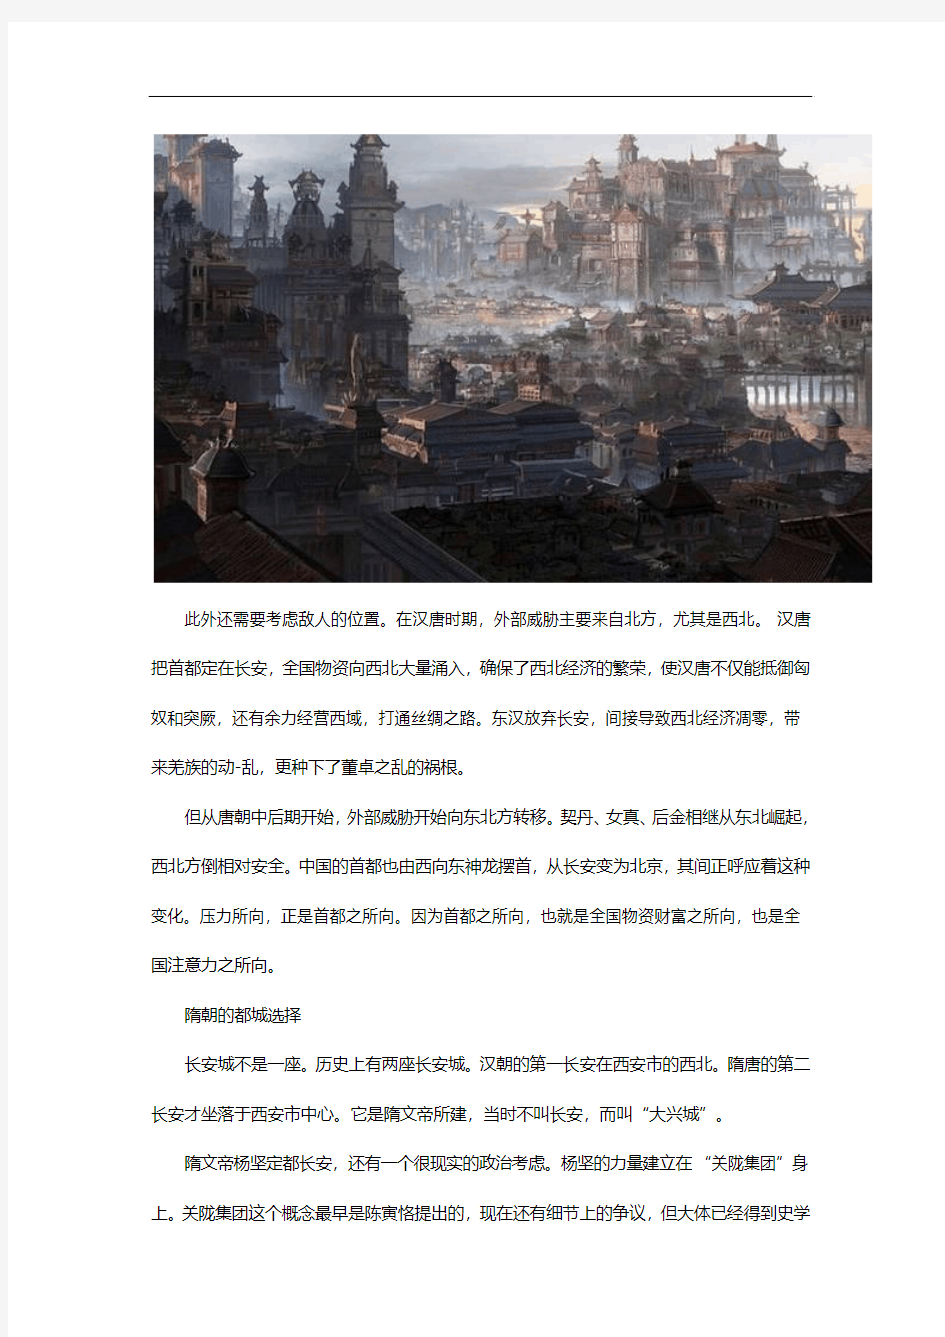 中国首都演变和千古局势变迁